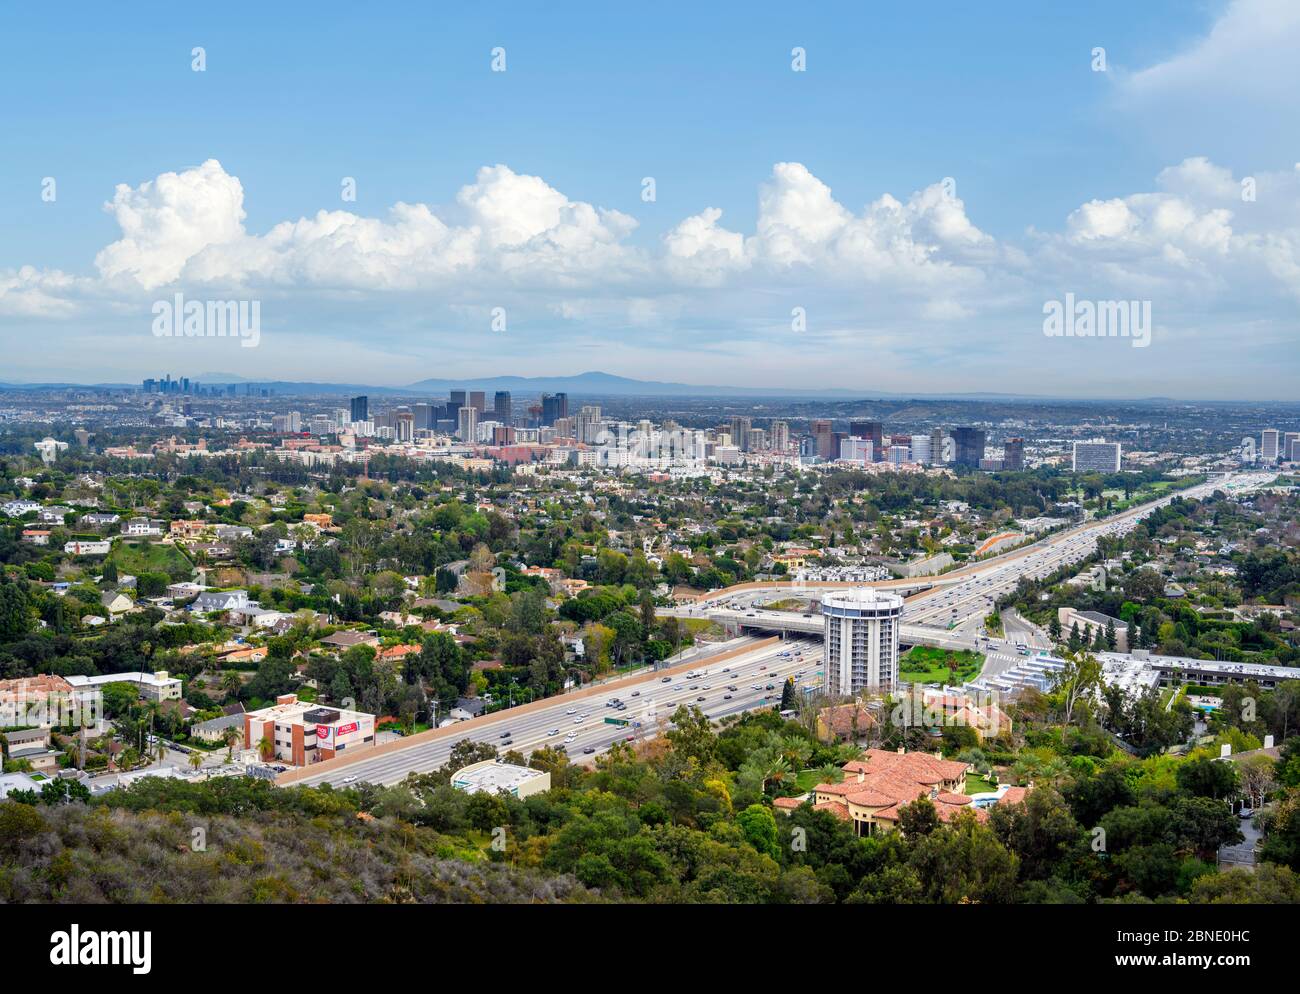 Skyline vom Getty Center mit dem San Diego Freeway (I-405) im Vordergrund, Los Angeles, Kalifornien, USA Stockfoto